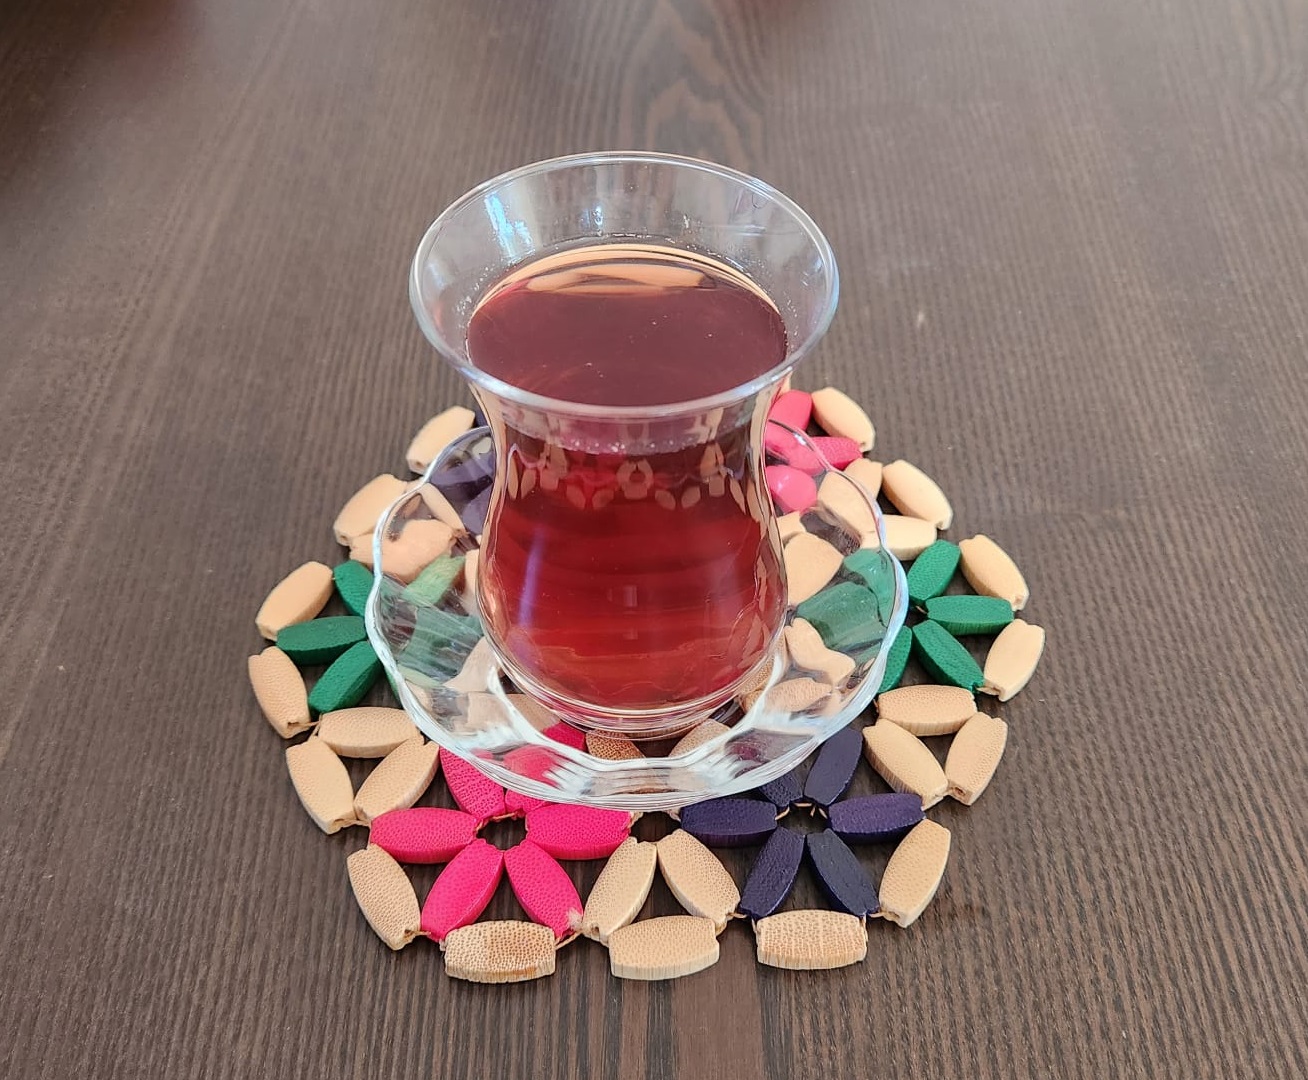 Pahare Ceai Turcesc, Set Pahare Ceai Turcesc Pasabahce, 42381, Set Pahare Ceai Turcesc Cu Farfurii La Yena.ro